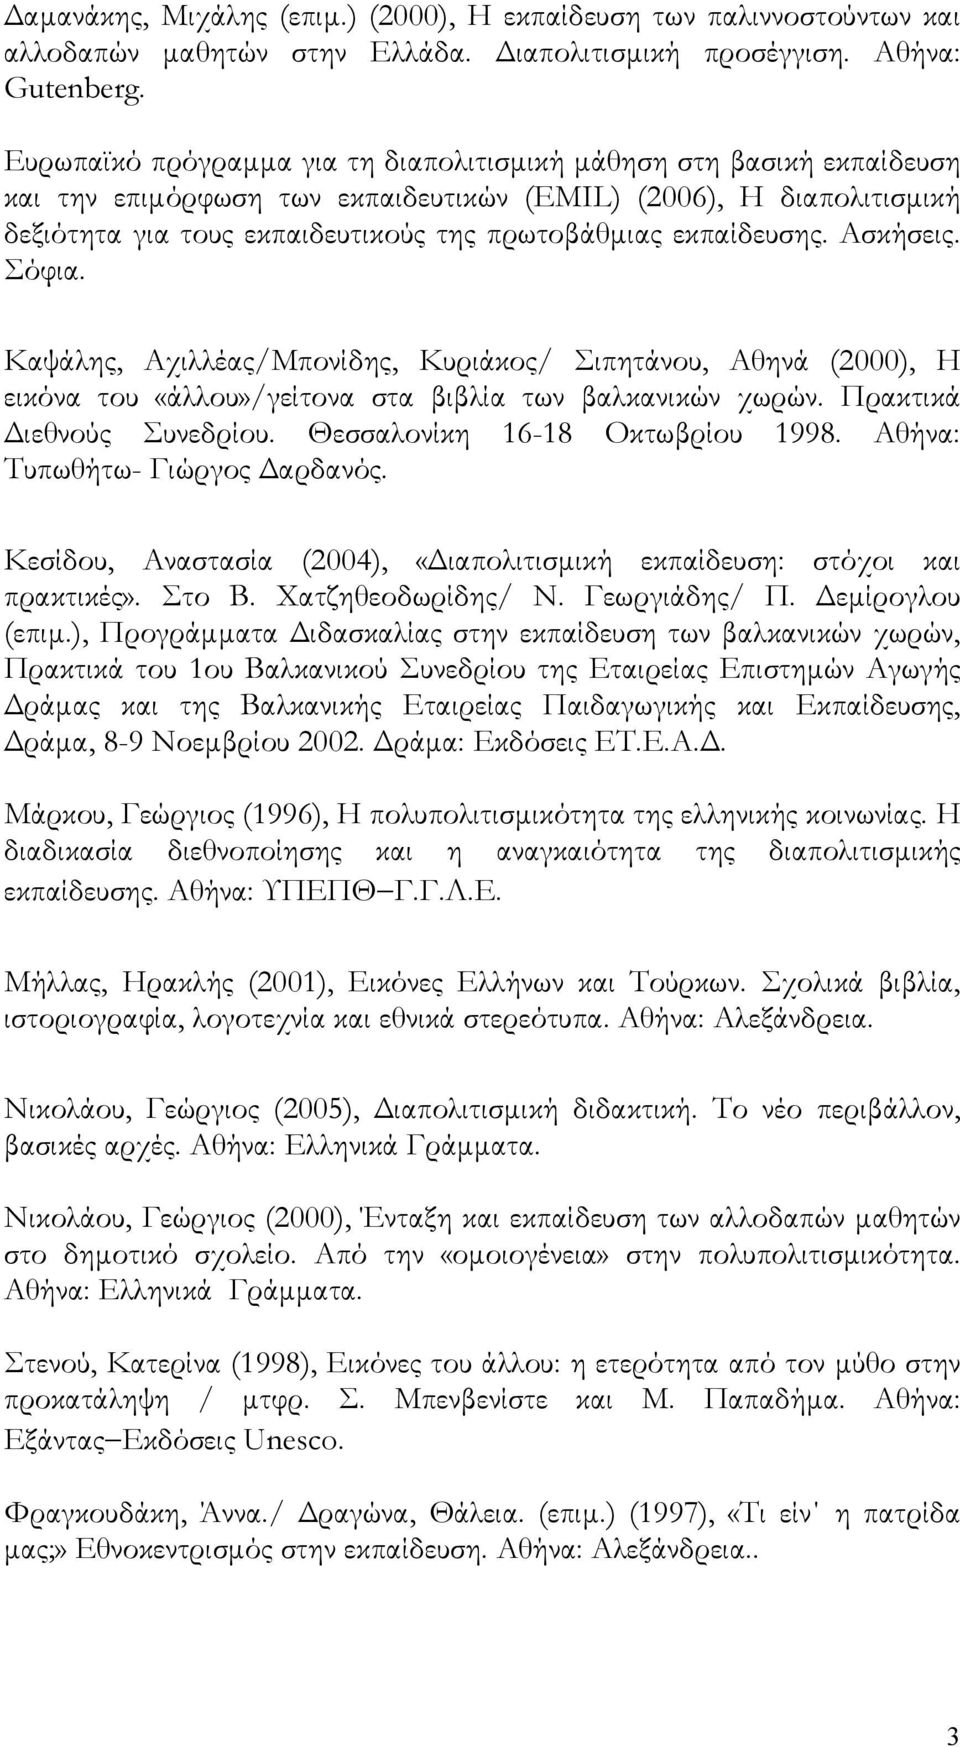 εκπαίδευσης. Ασκήσεις. Σόφια. Καψάλης, Αχιλλέας/Μπονίδης, Κυριάκος/ Σιπητάνου, Αθηνά (2000), Η εικόνα του «άλλου»/γείτονα στα βιβλία των βαλκανικών χωρών. Πρακτικά Διεθνούς Συνεδρίου.